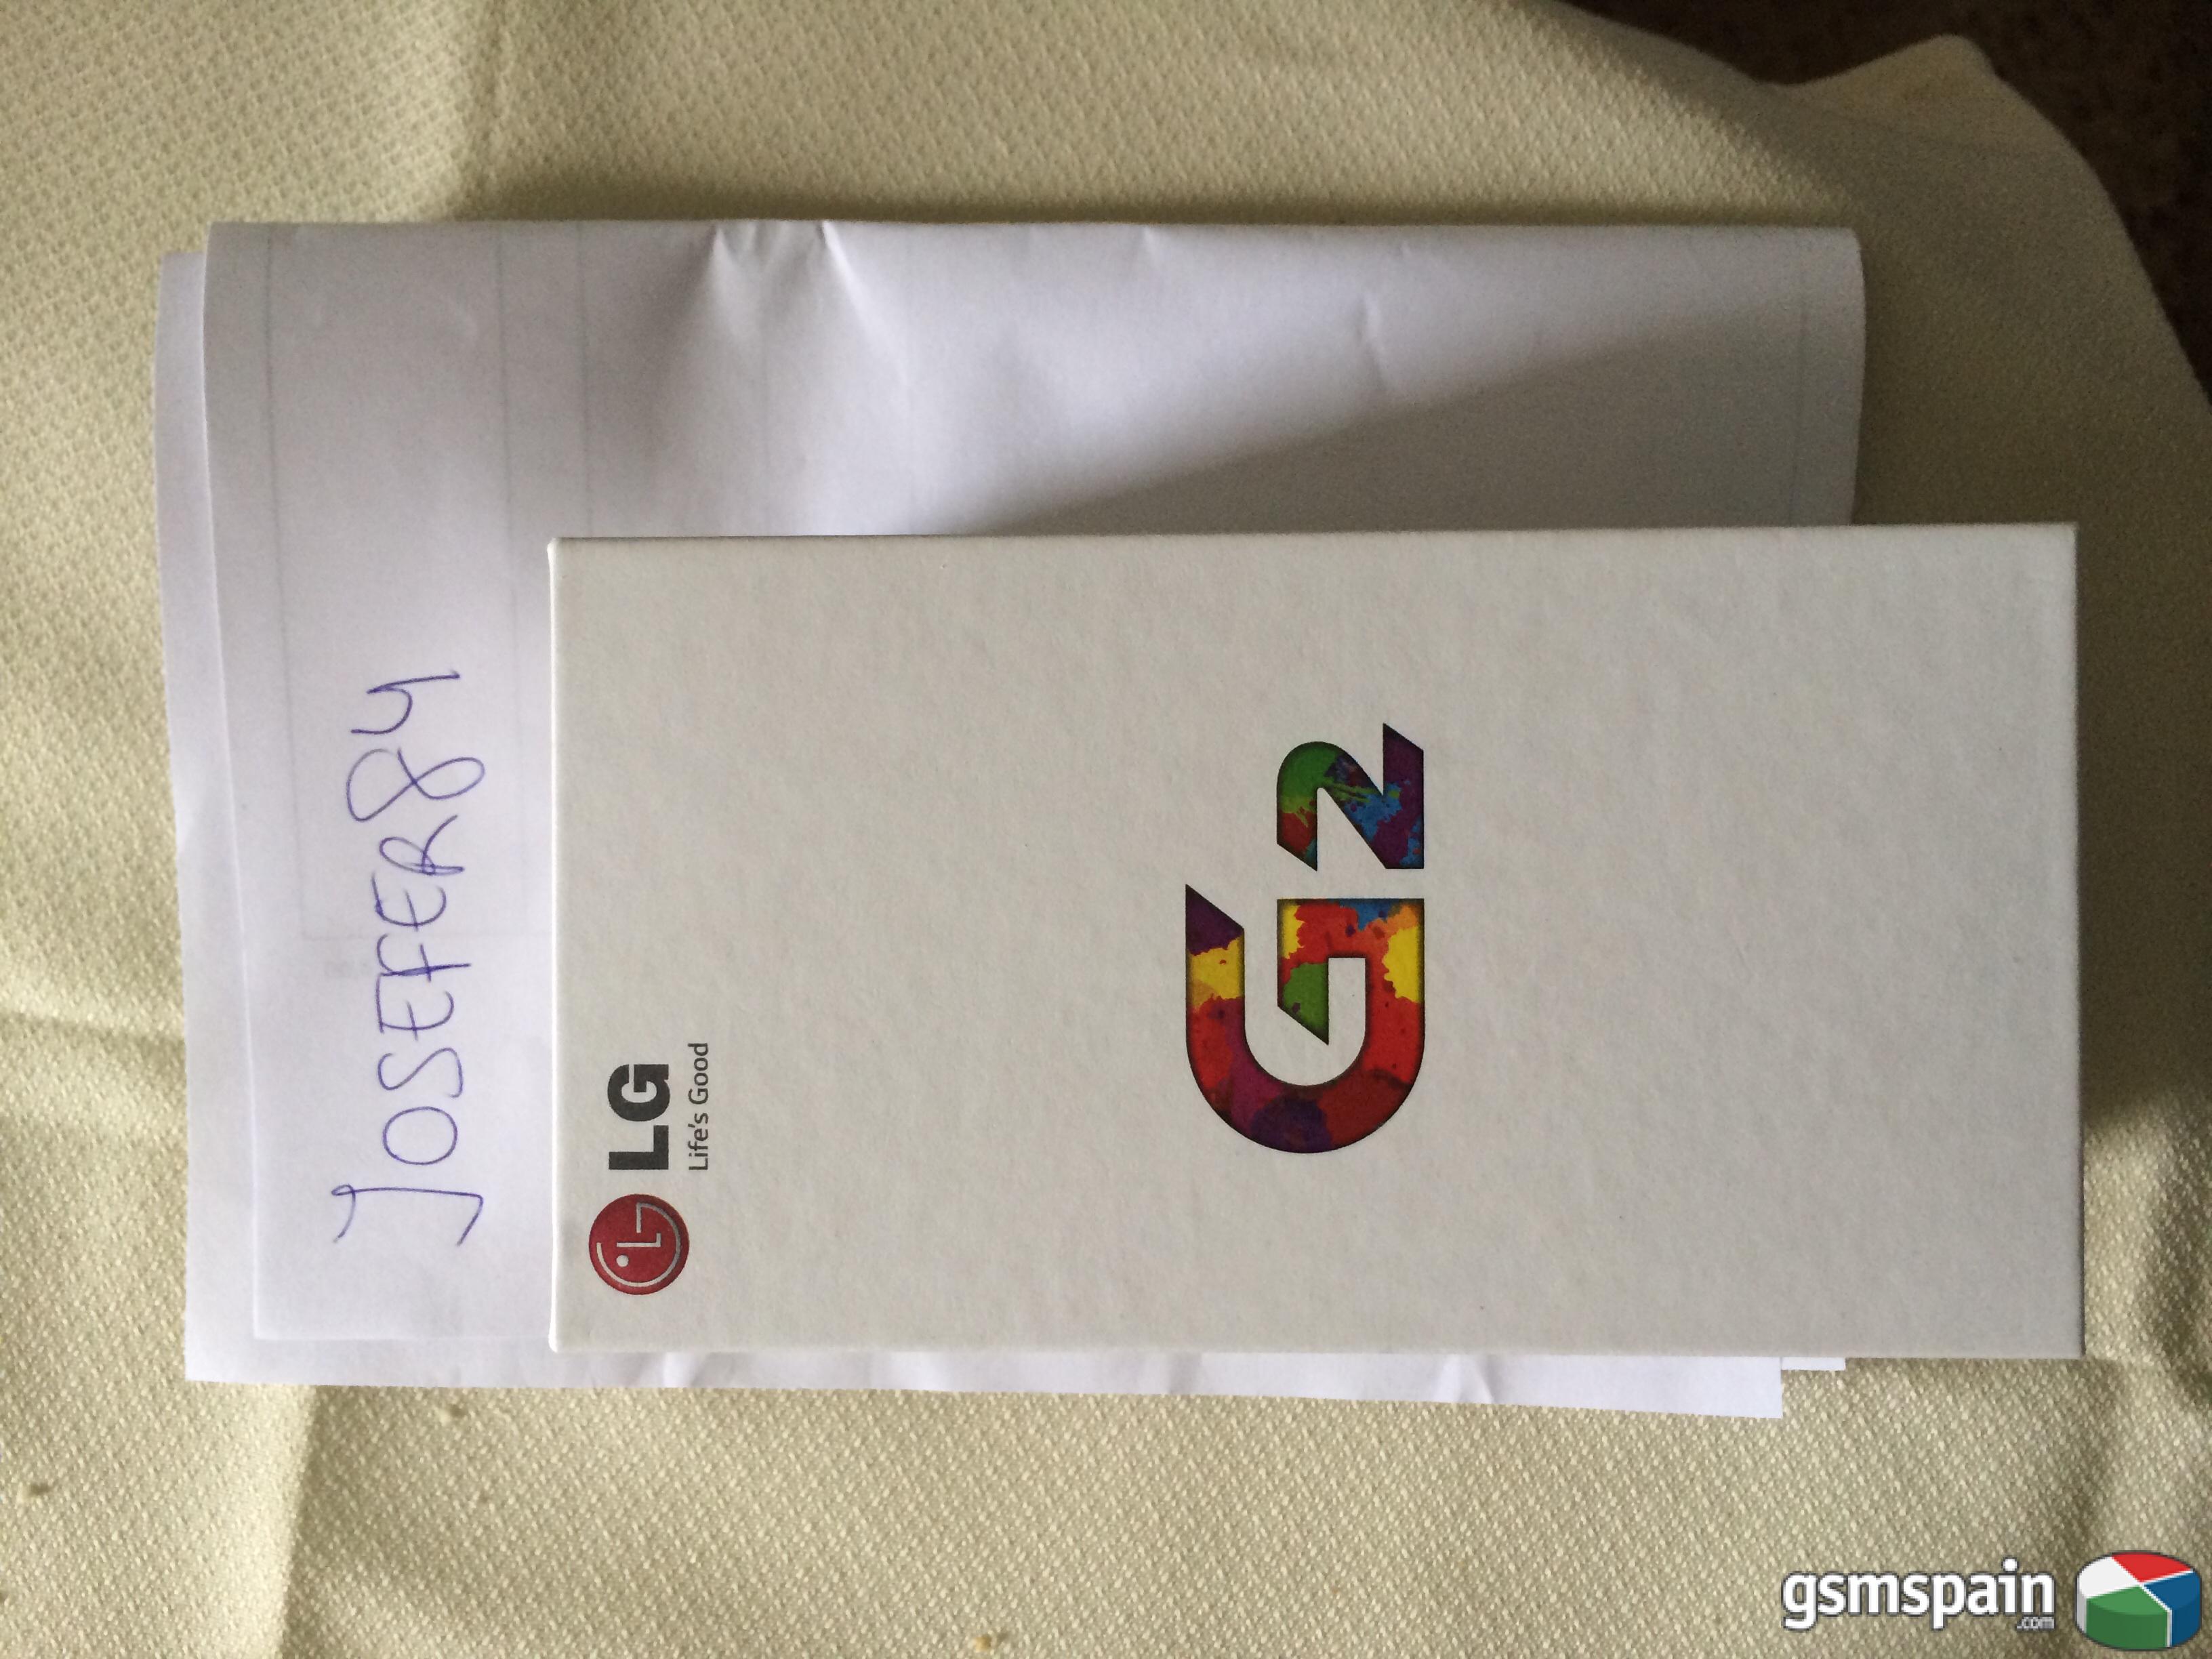 [VENDO] LG G2 32GB vodafone precintado